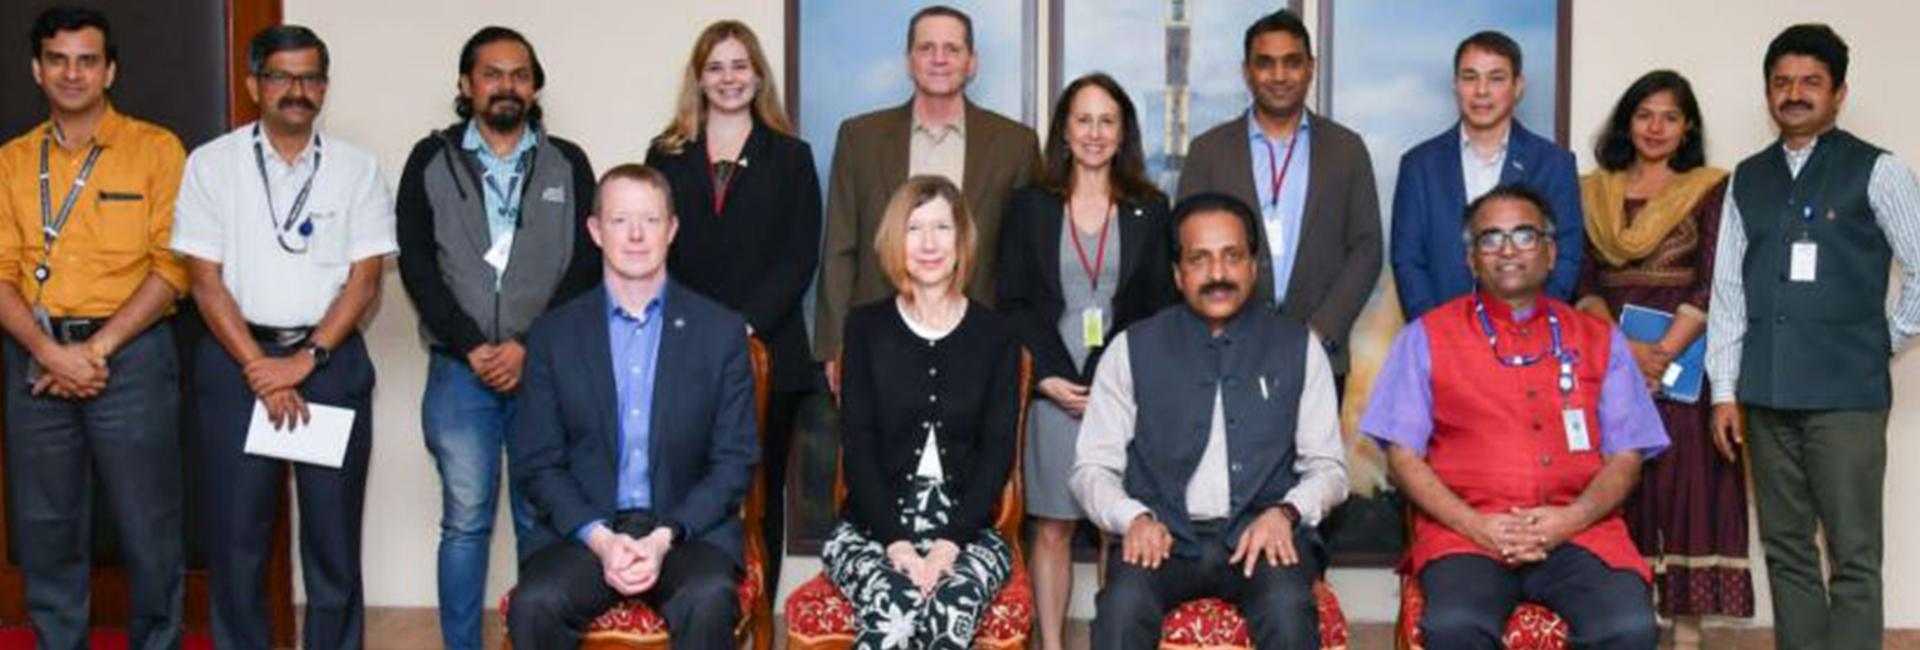 Kathryn Lueders, phó quản trị viên ban giám đốc sứ mệnh hoạt động không gian tại NASA đang có chuyến công du Ấn Độ. Cô đã đến thăm ISRO và gặp chủ tịch S Somnath, giám đốc chuyến bay vũ trụ của con người, Tiến sĩ Umamaheswaran R, và các thành viên khác của lực lượng lao động ISRO.